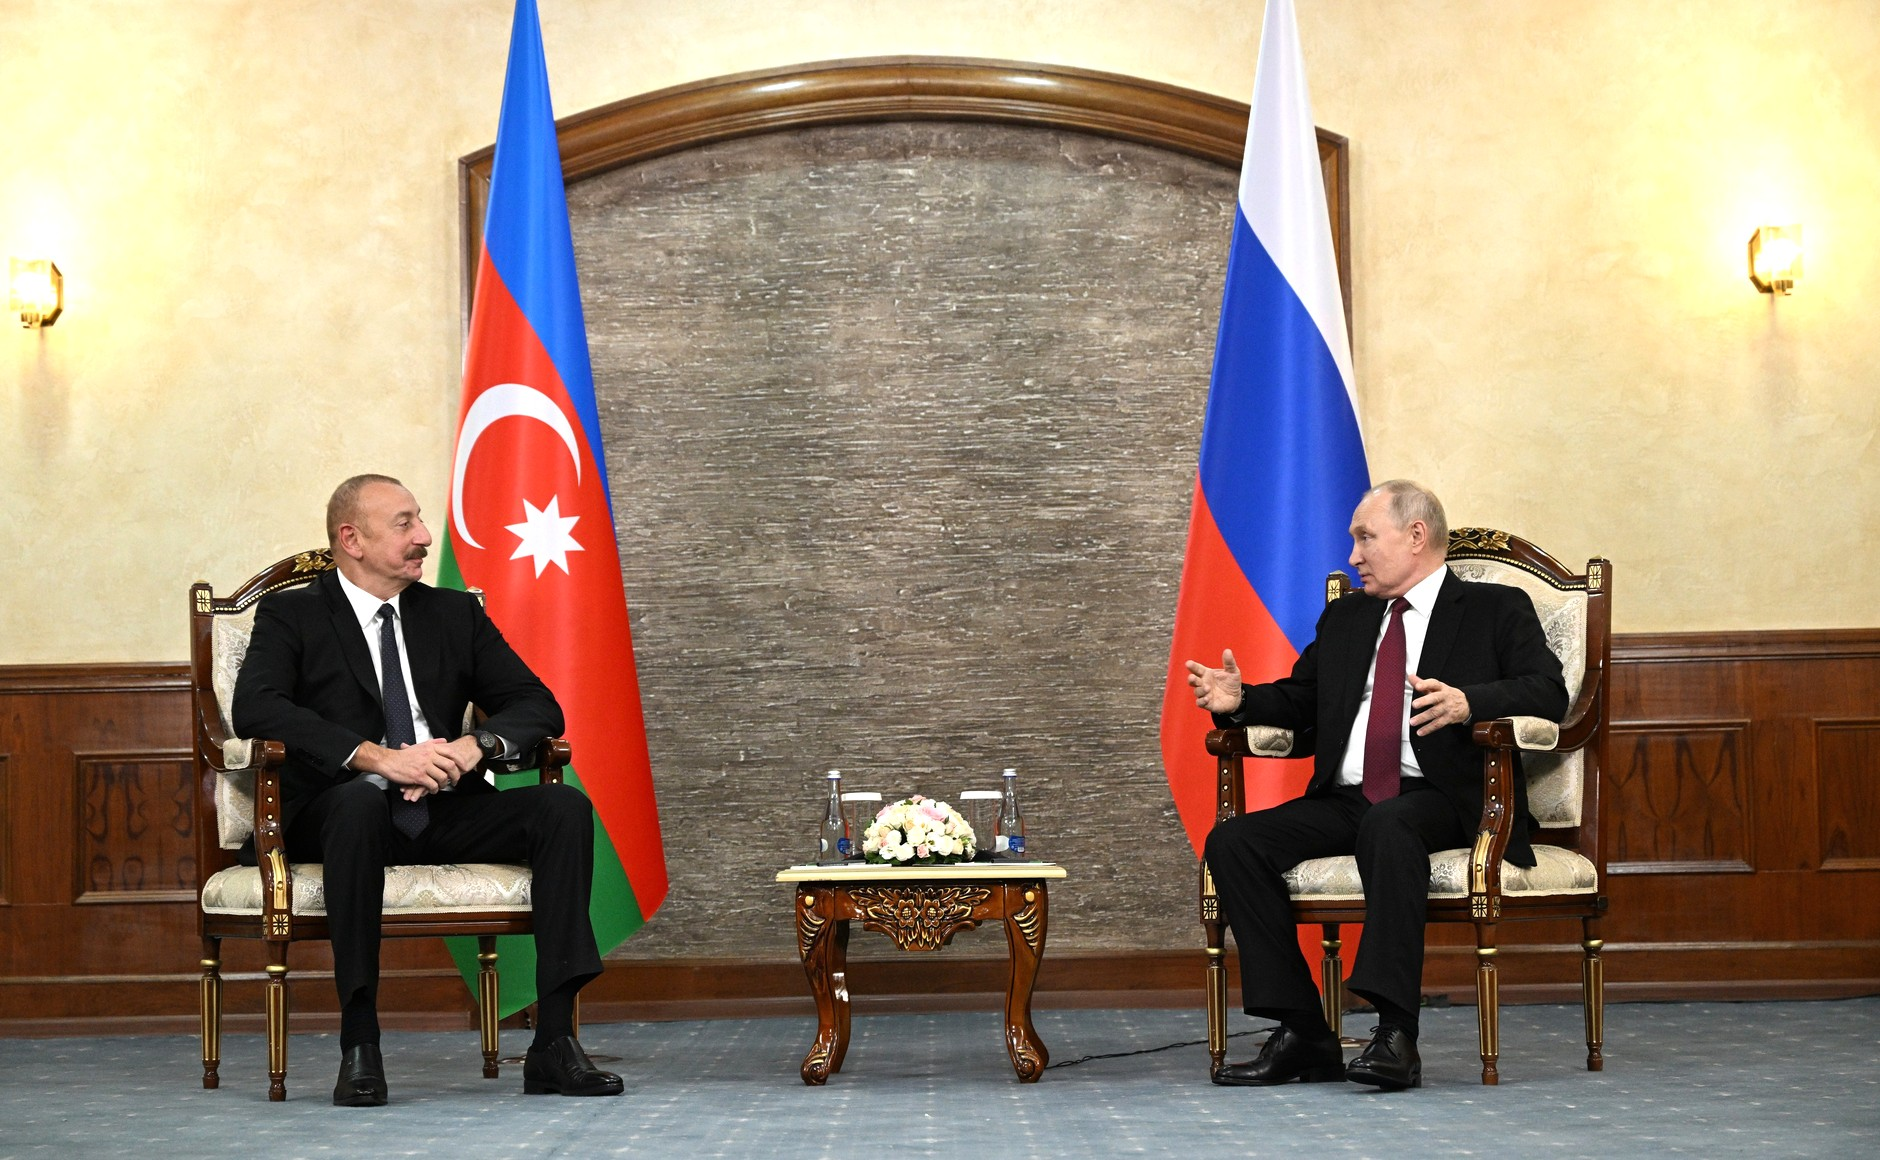 В Бишкеке прошла встреча Путина и Алиева — о чем говорили президенты